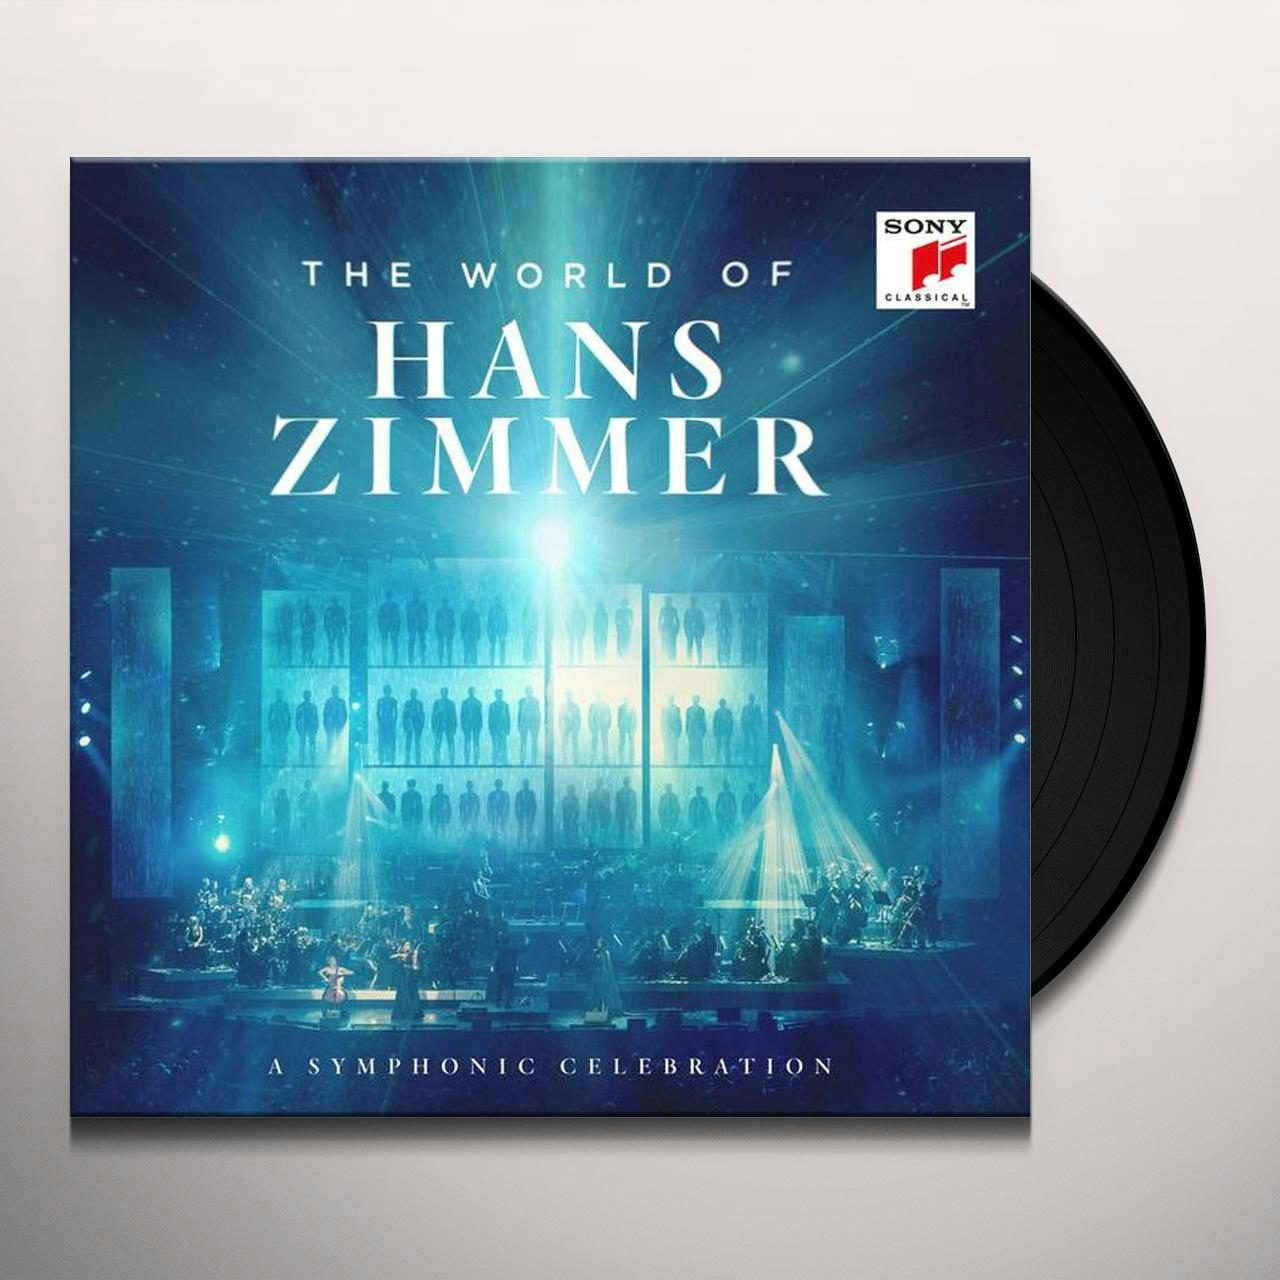 Hans zimmer orchestra. Hans Zimmer - the World of Hans Zimmer - a Symphonic Celebration. The World of Hans Zimmer Vienna. Ханс Циммер альбомы. World of Hans Zimmer 2 пластинки.